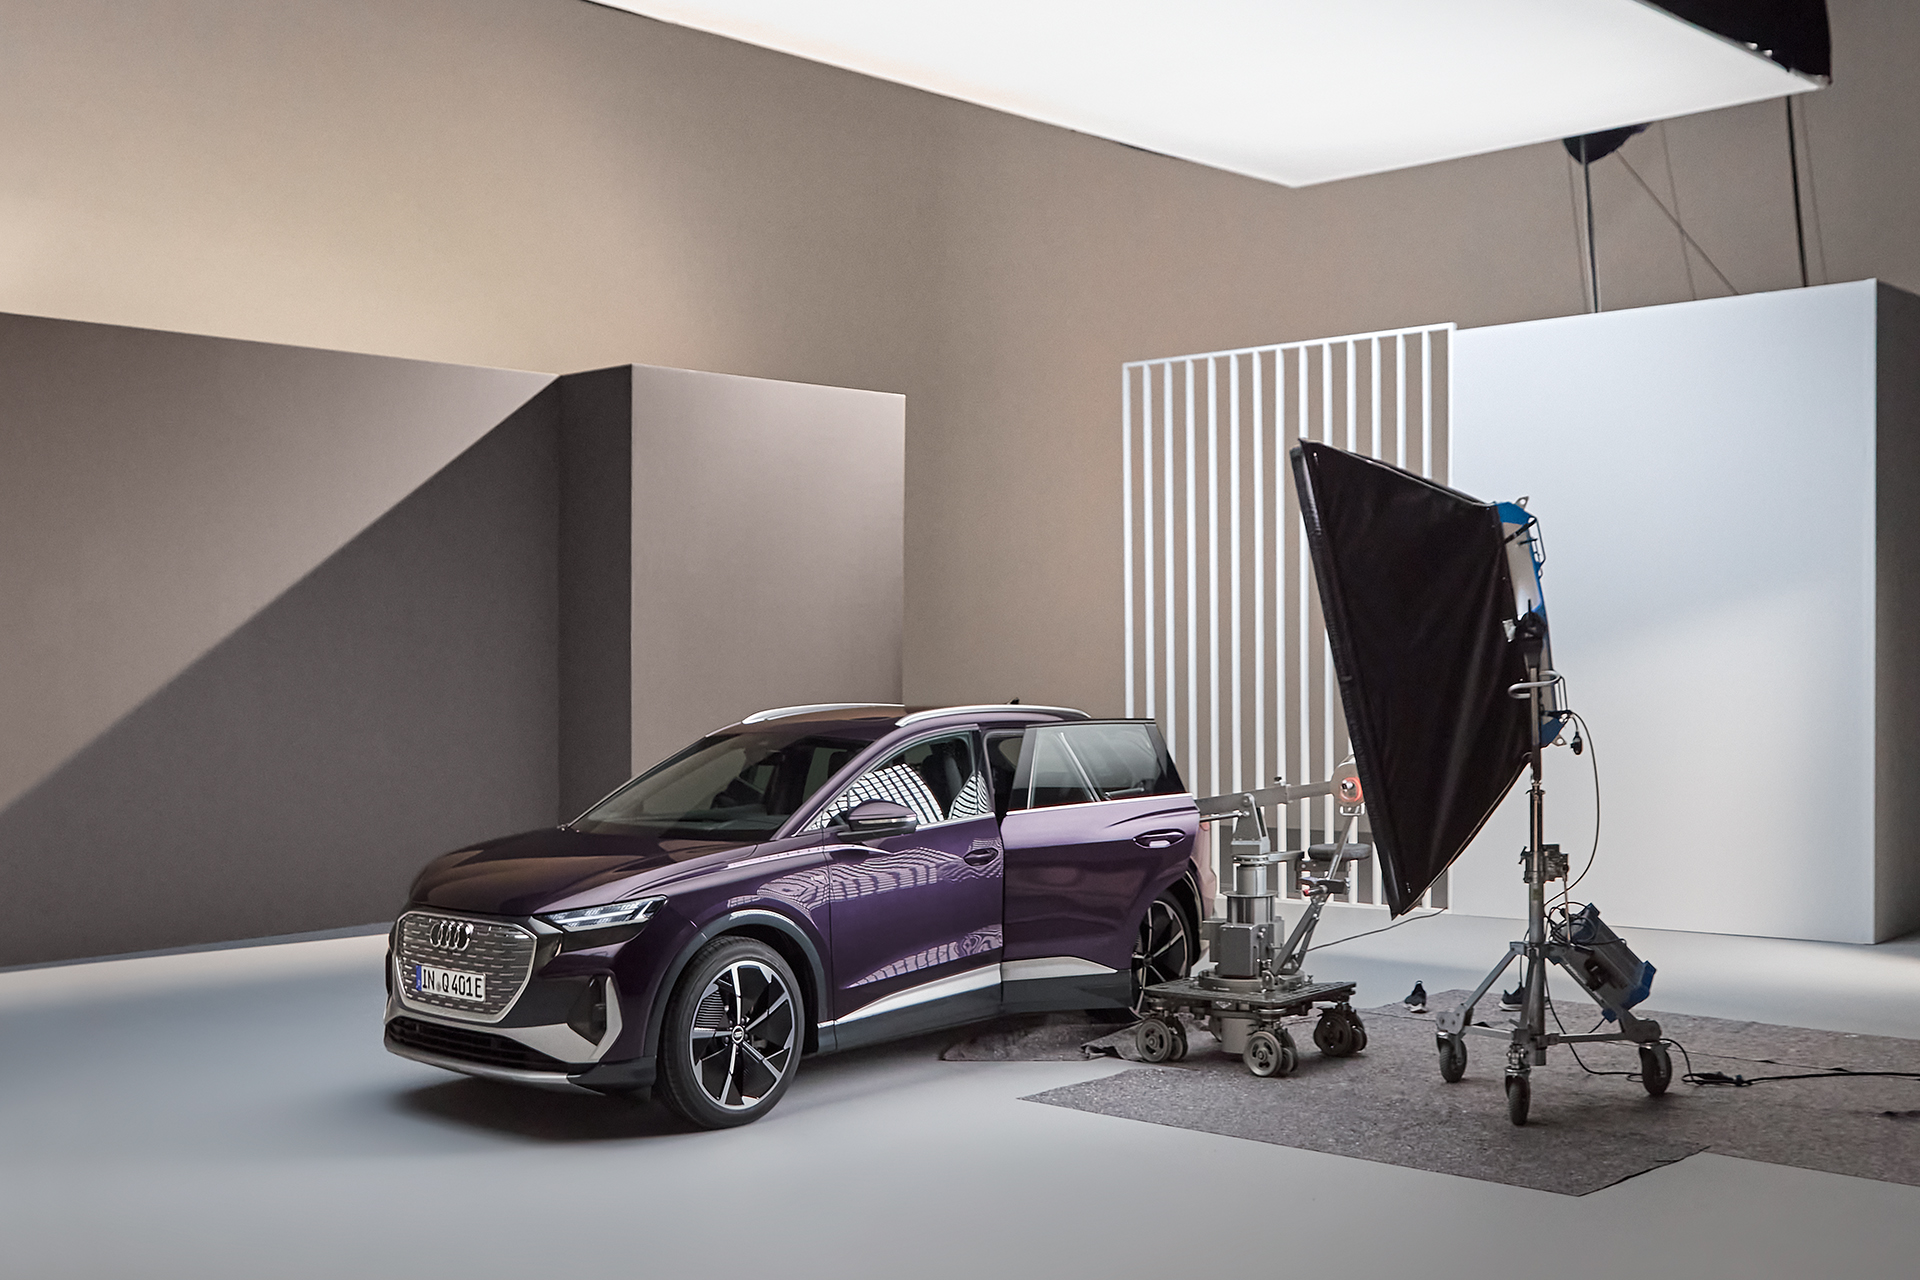 Der Audi Q4 e-tron trifft im Studio auf ein vielfältiges Sortiment an Scheinwerfern und Kameras.